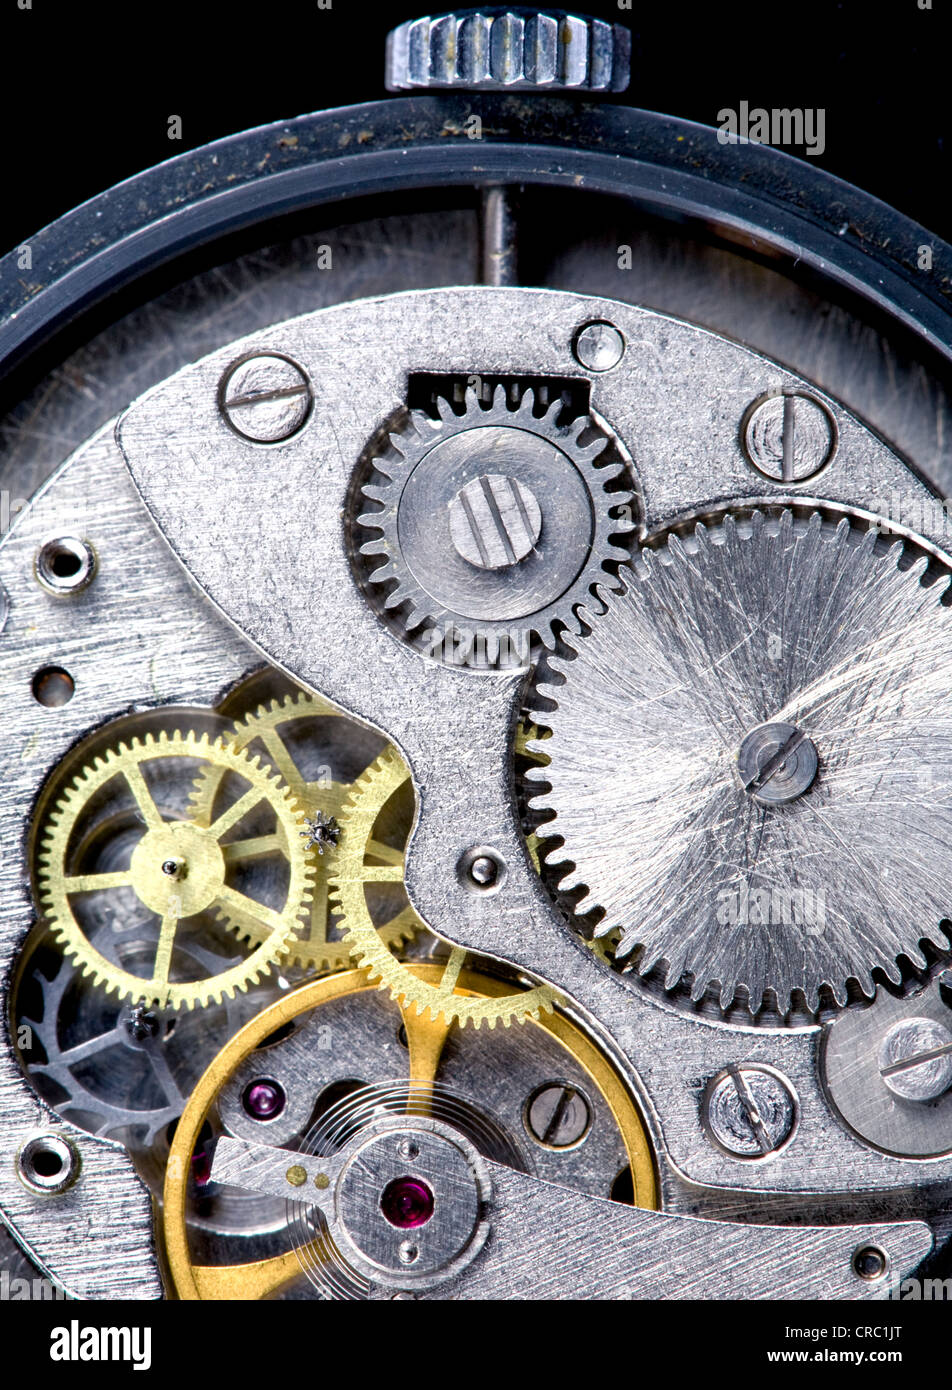 Horloge de vieux watch close-up Banque D'Images